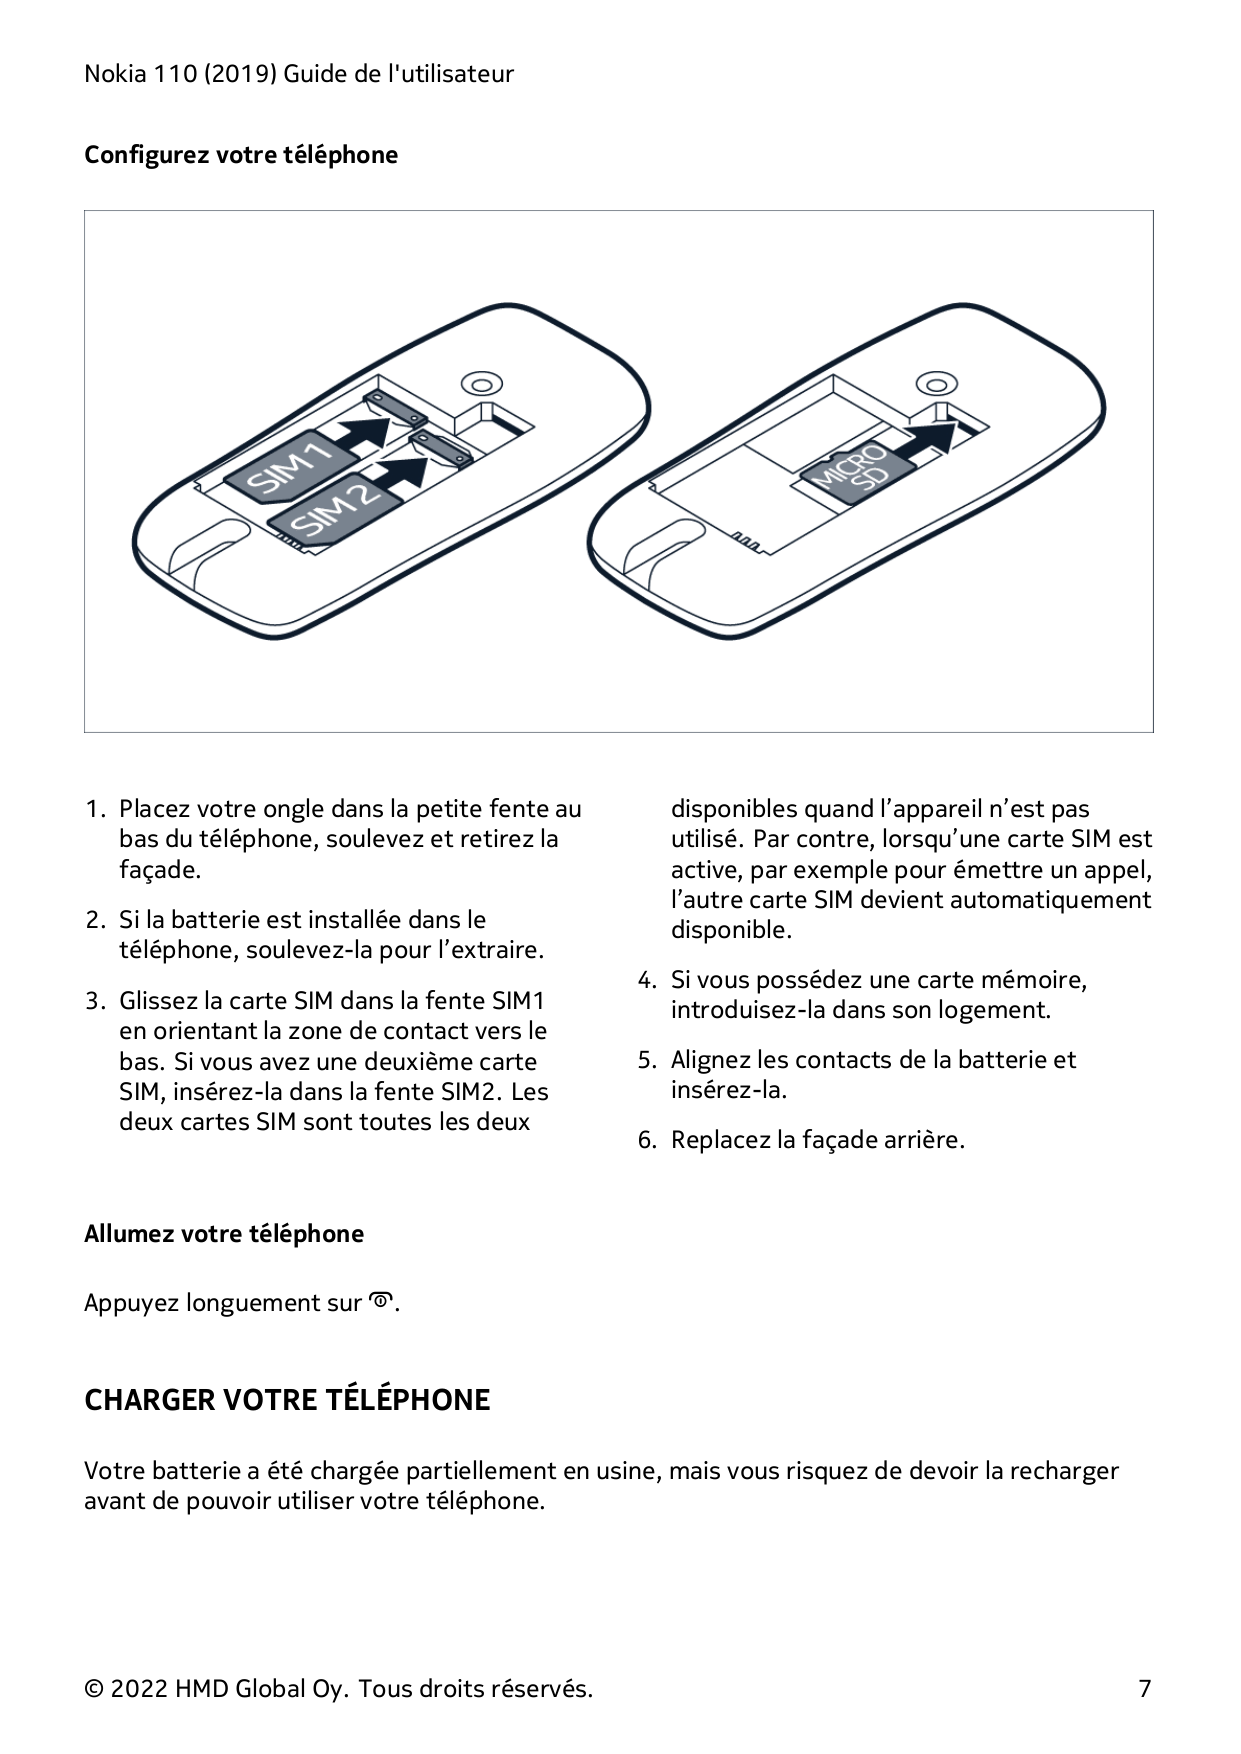 Nokia 110 (2019) Guide de l'utilisateurConfigurez votre téléphone1. Placez votre ongle dans la petite fente aubas du téléphone, 